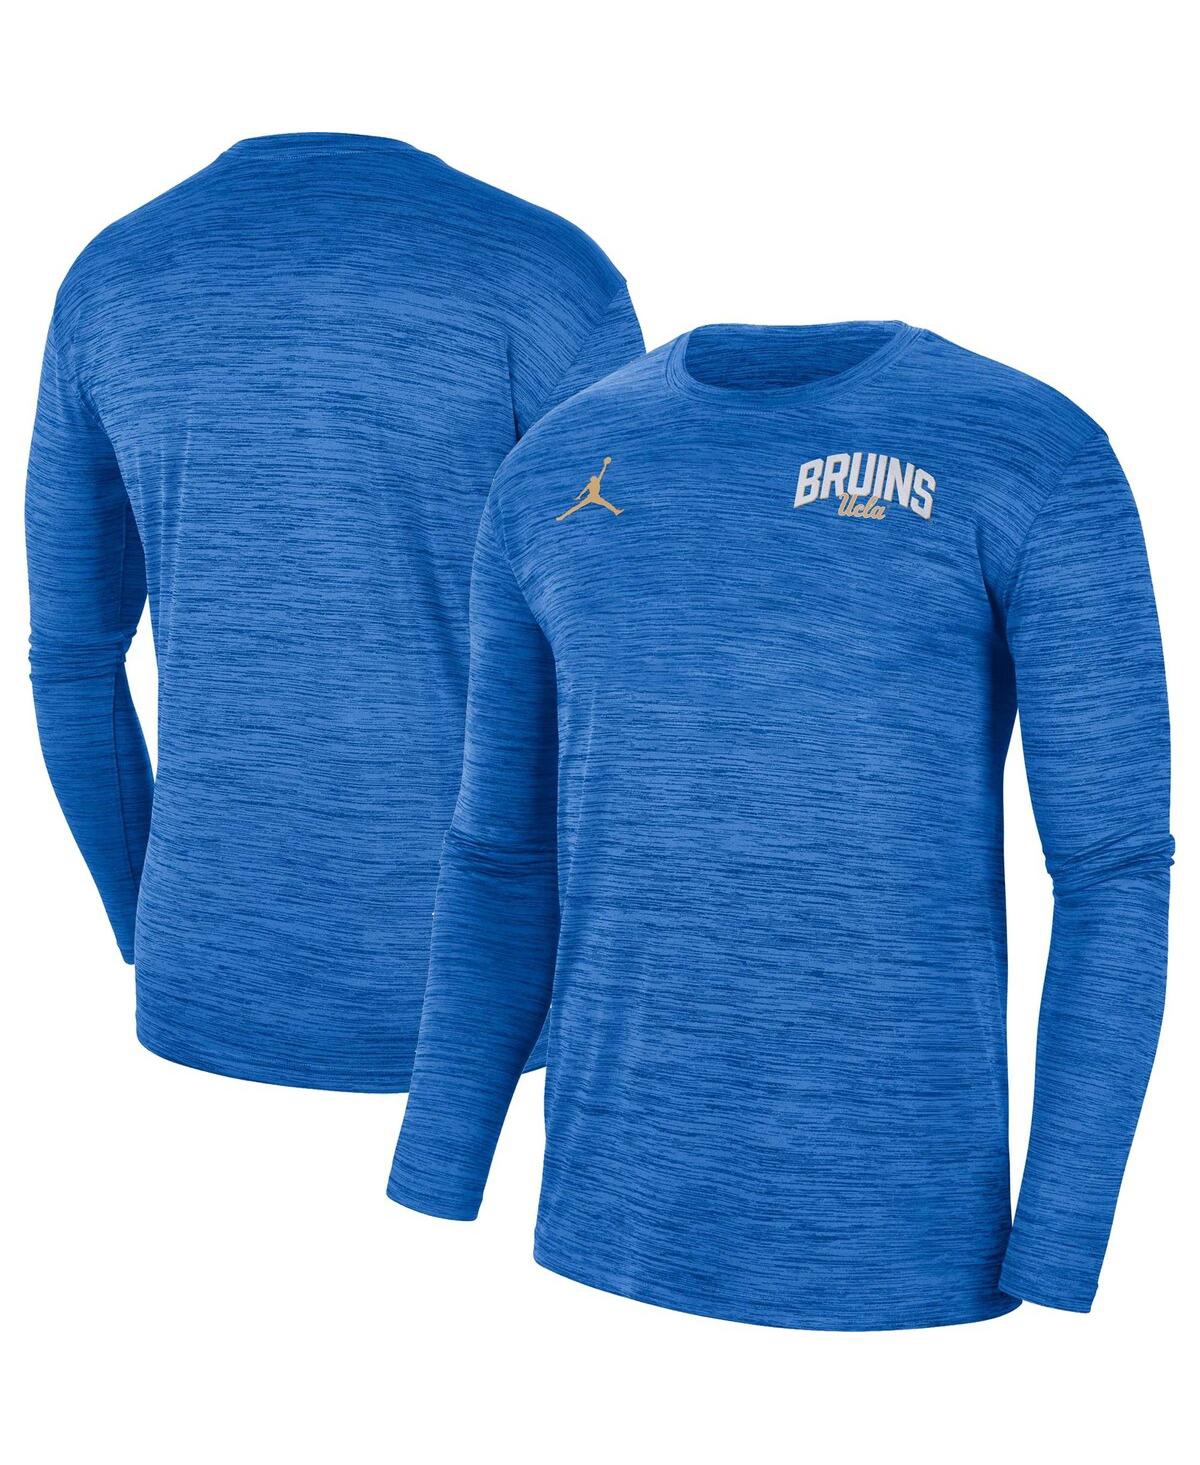 Men's Jordan Blue Ucla Bruins Sideline Game Day Velocity Performance Long Sleeve T-shirt - Blue